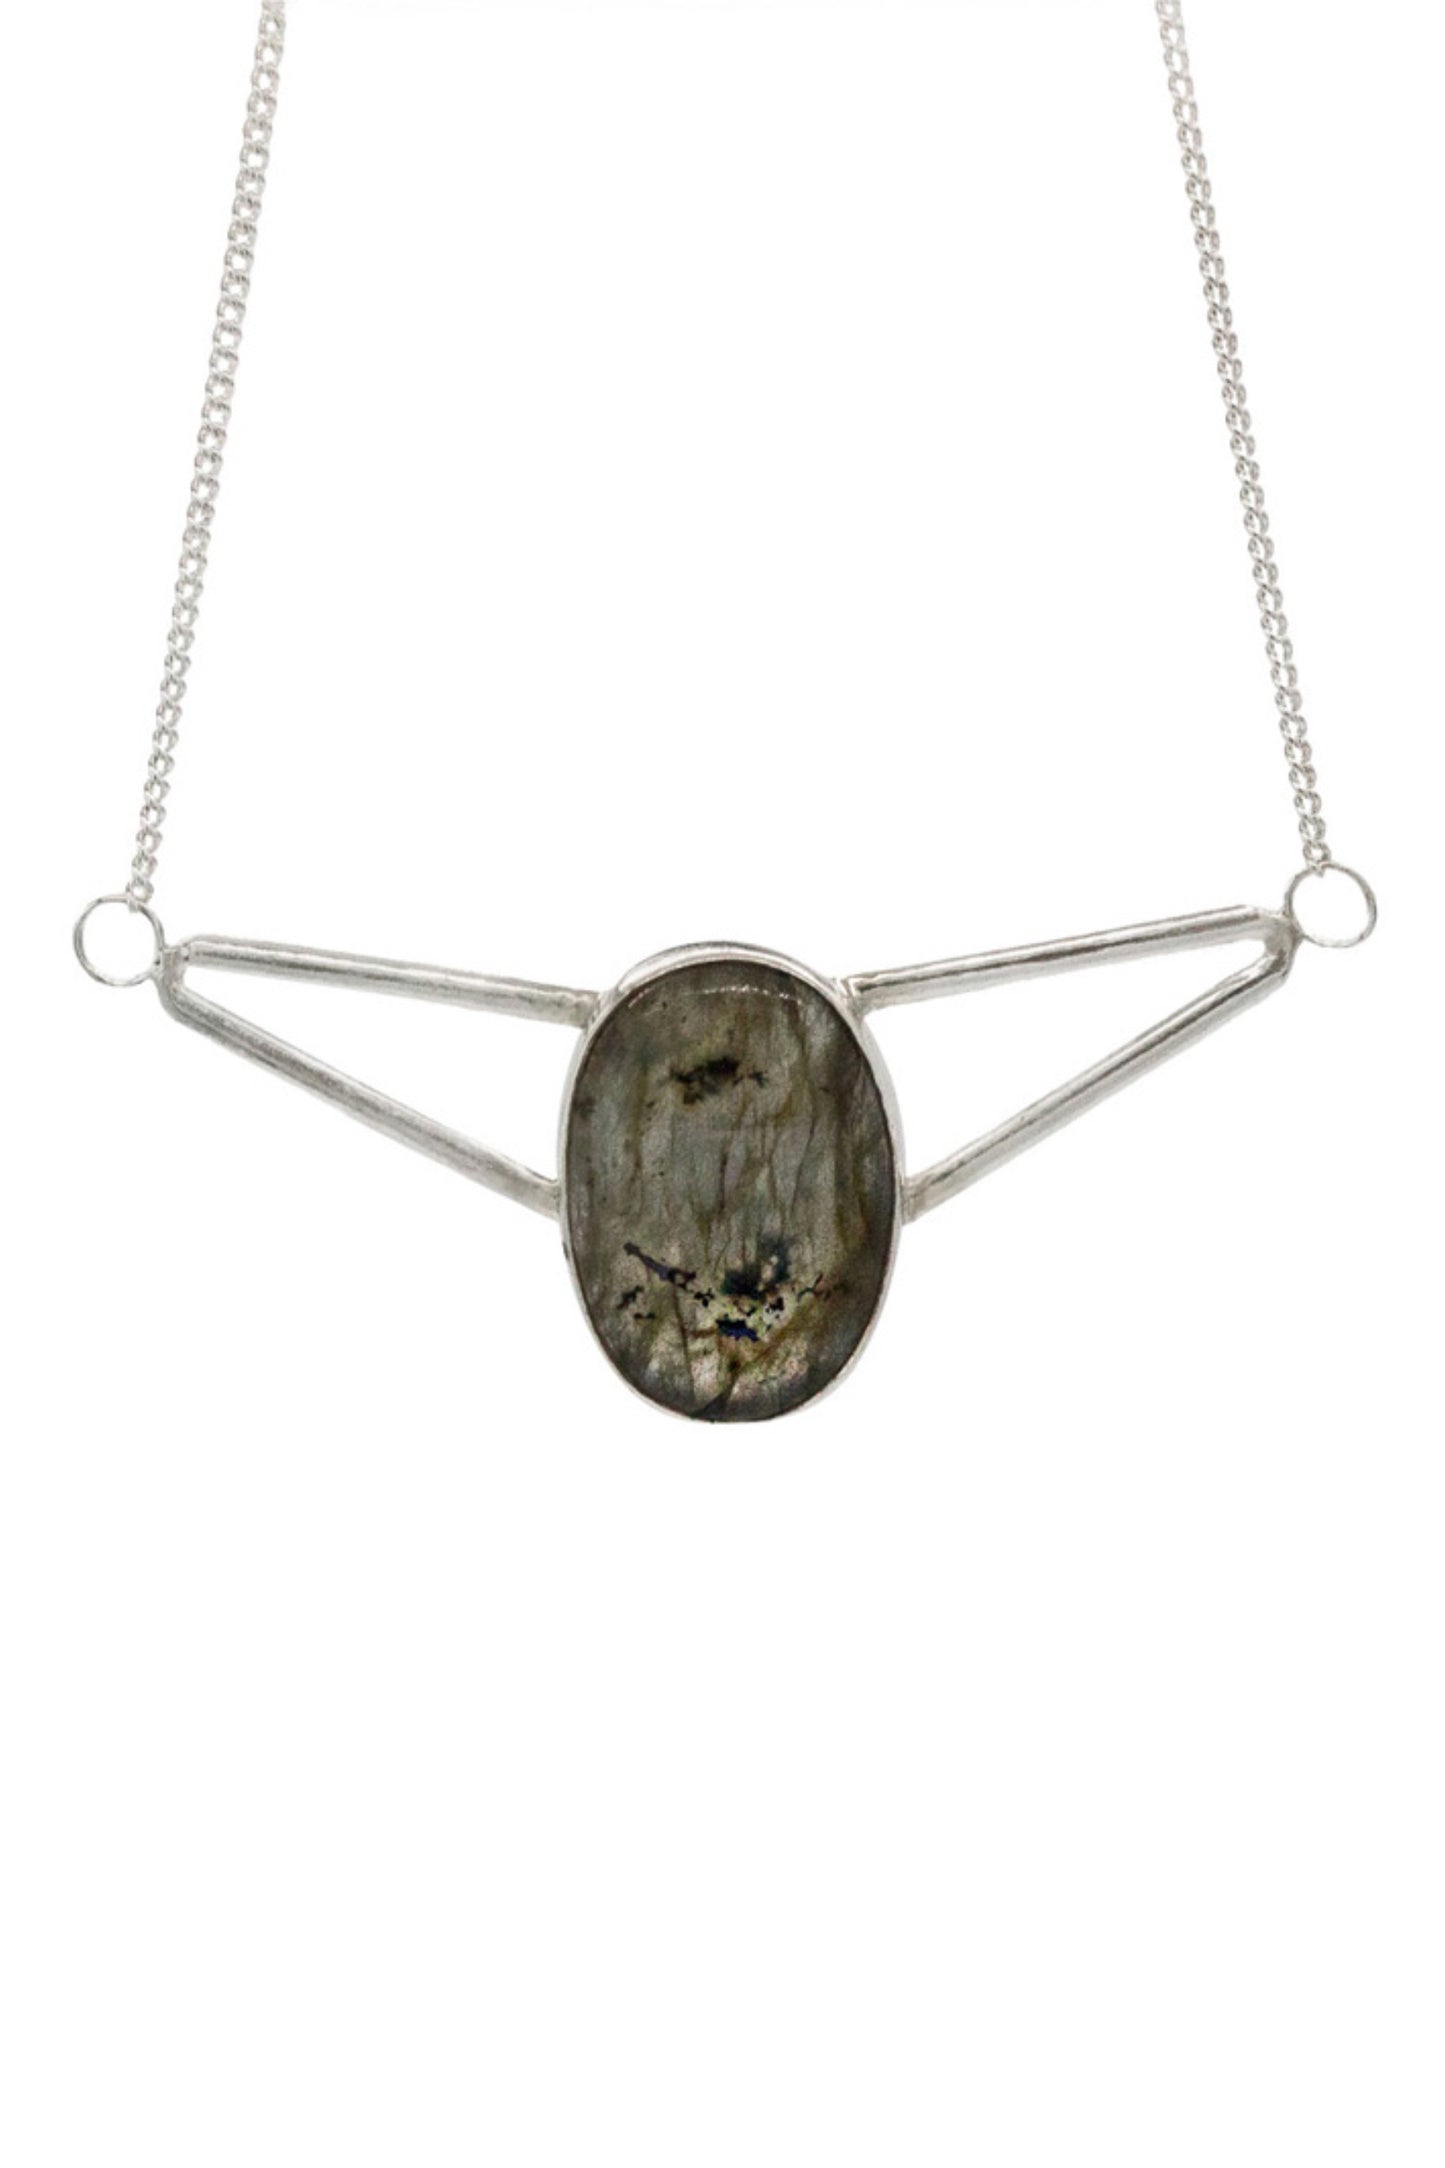 Deco necklace, Labradorite, Sterling Silver